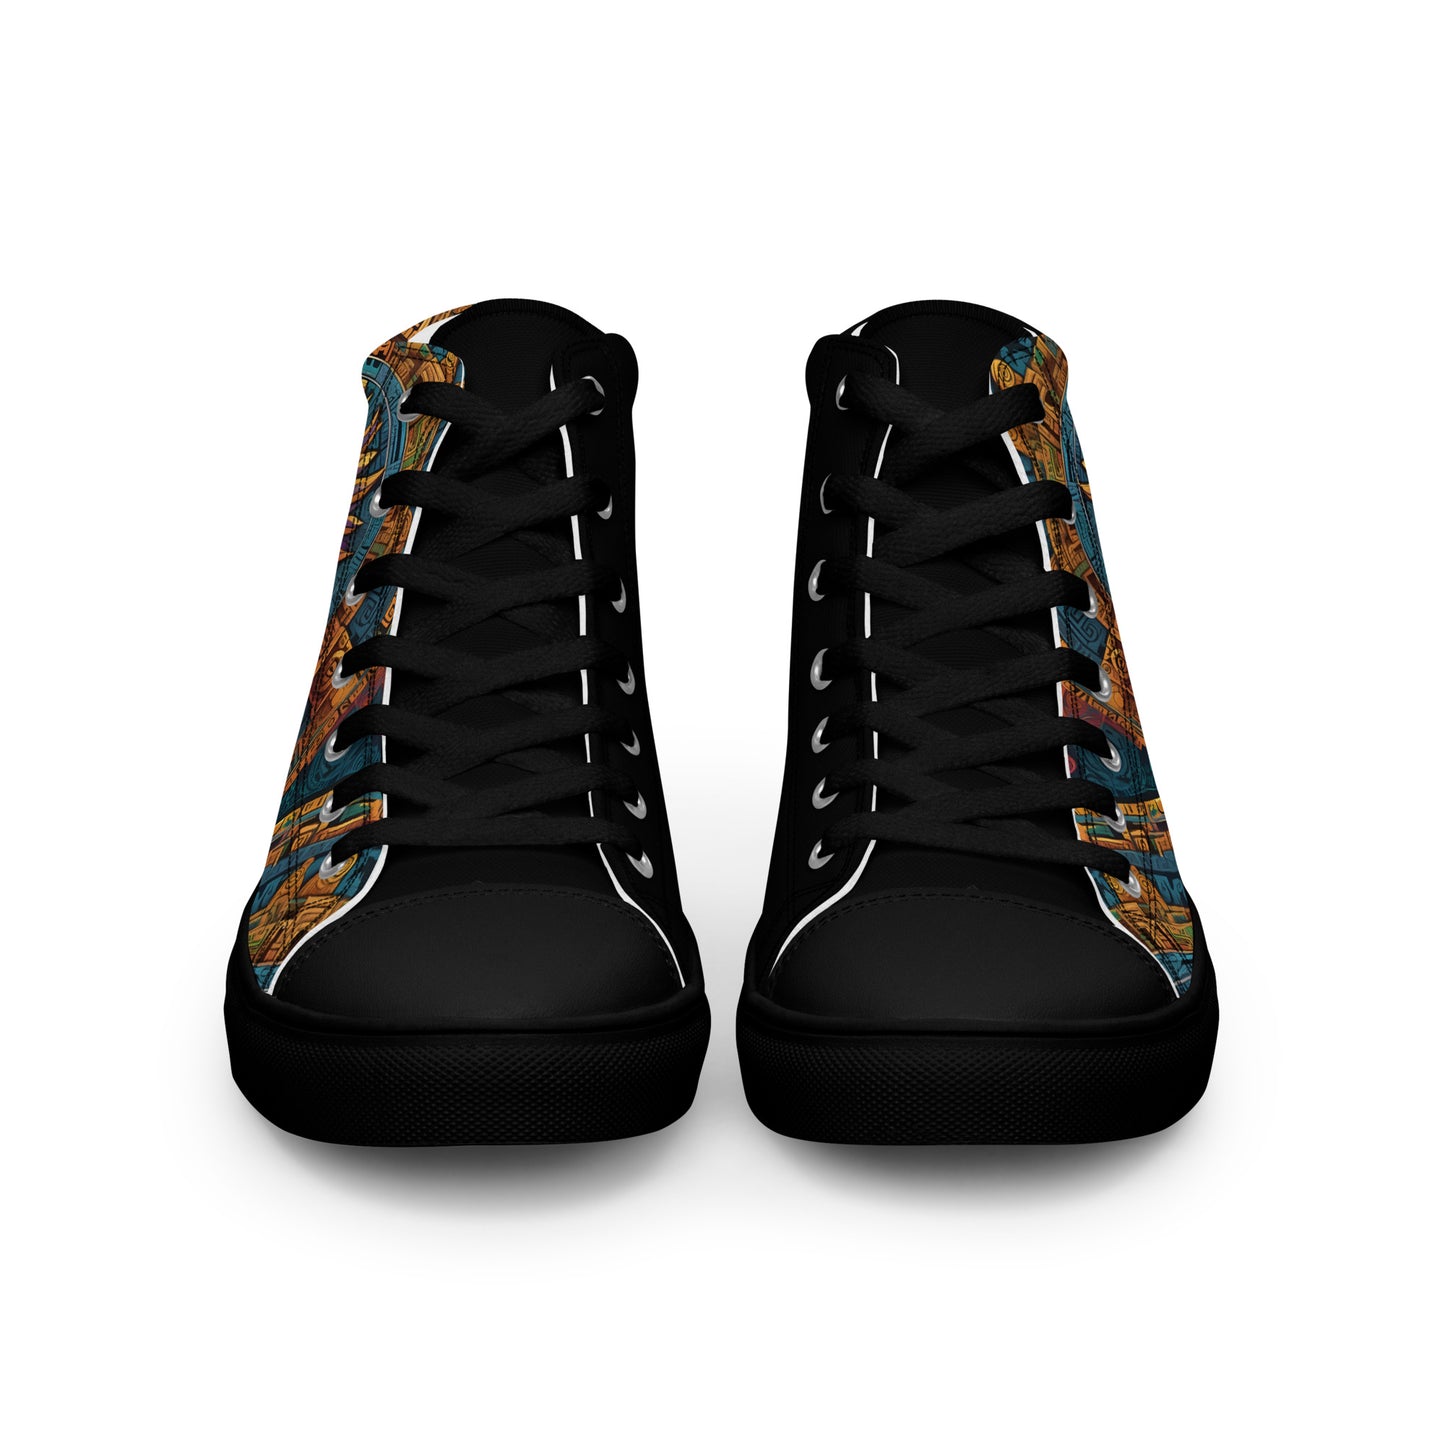 Calendario Qoyllor - Women - Black - High top shoes